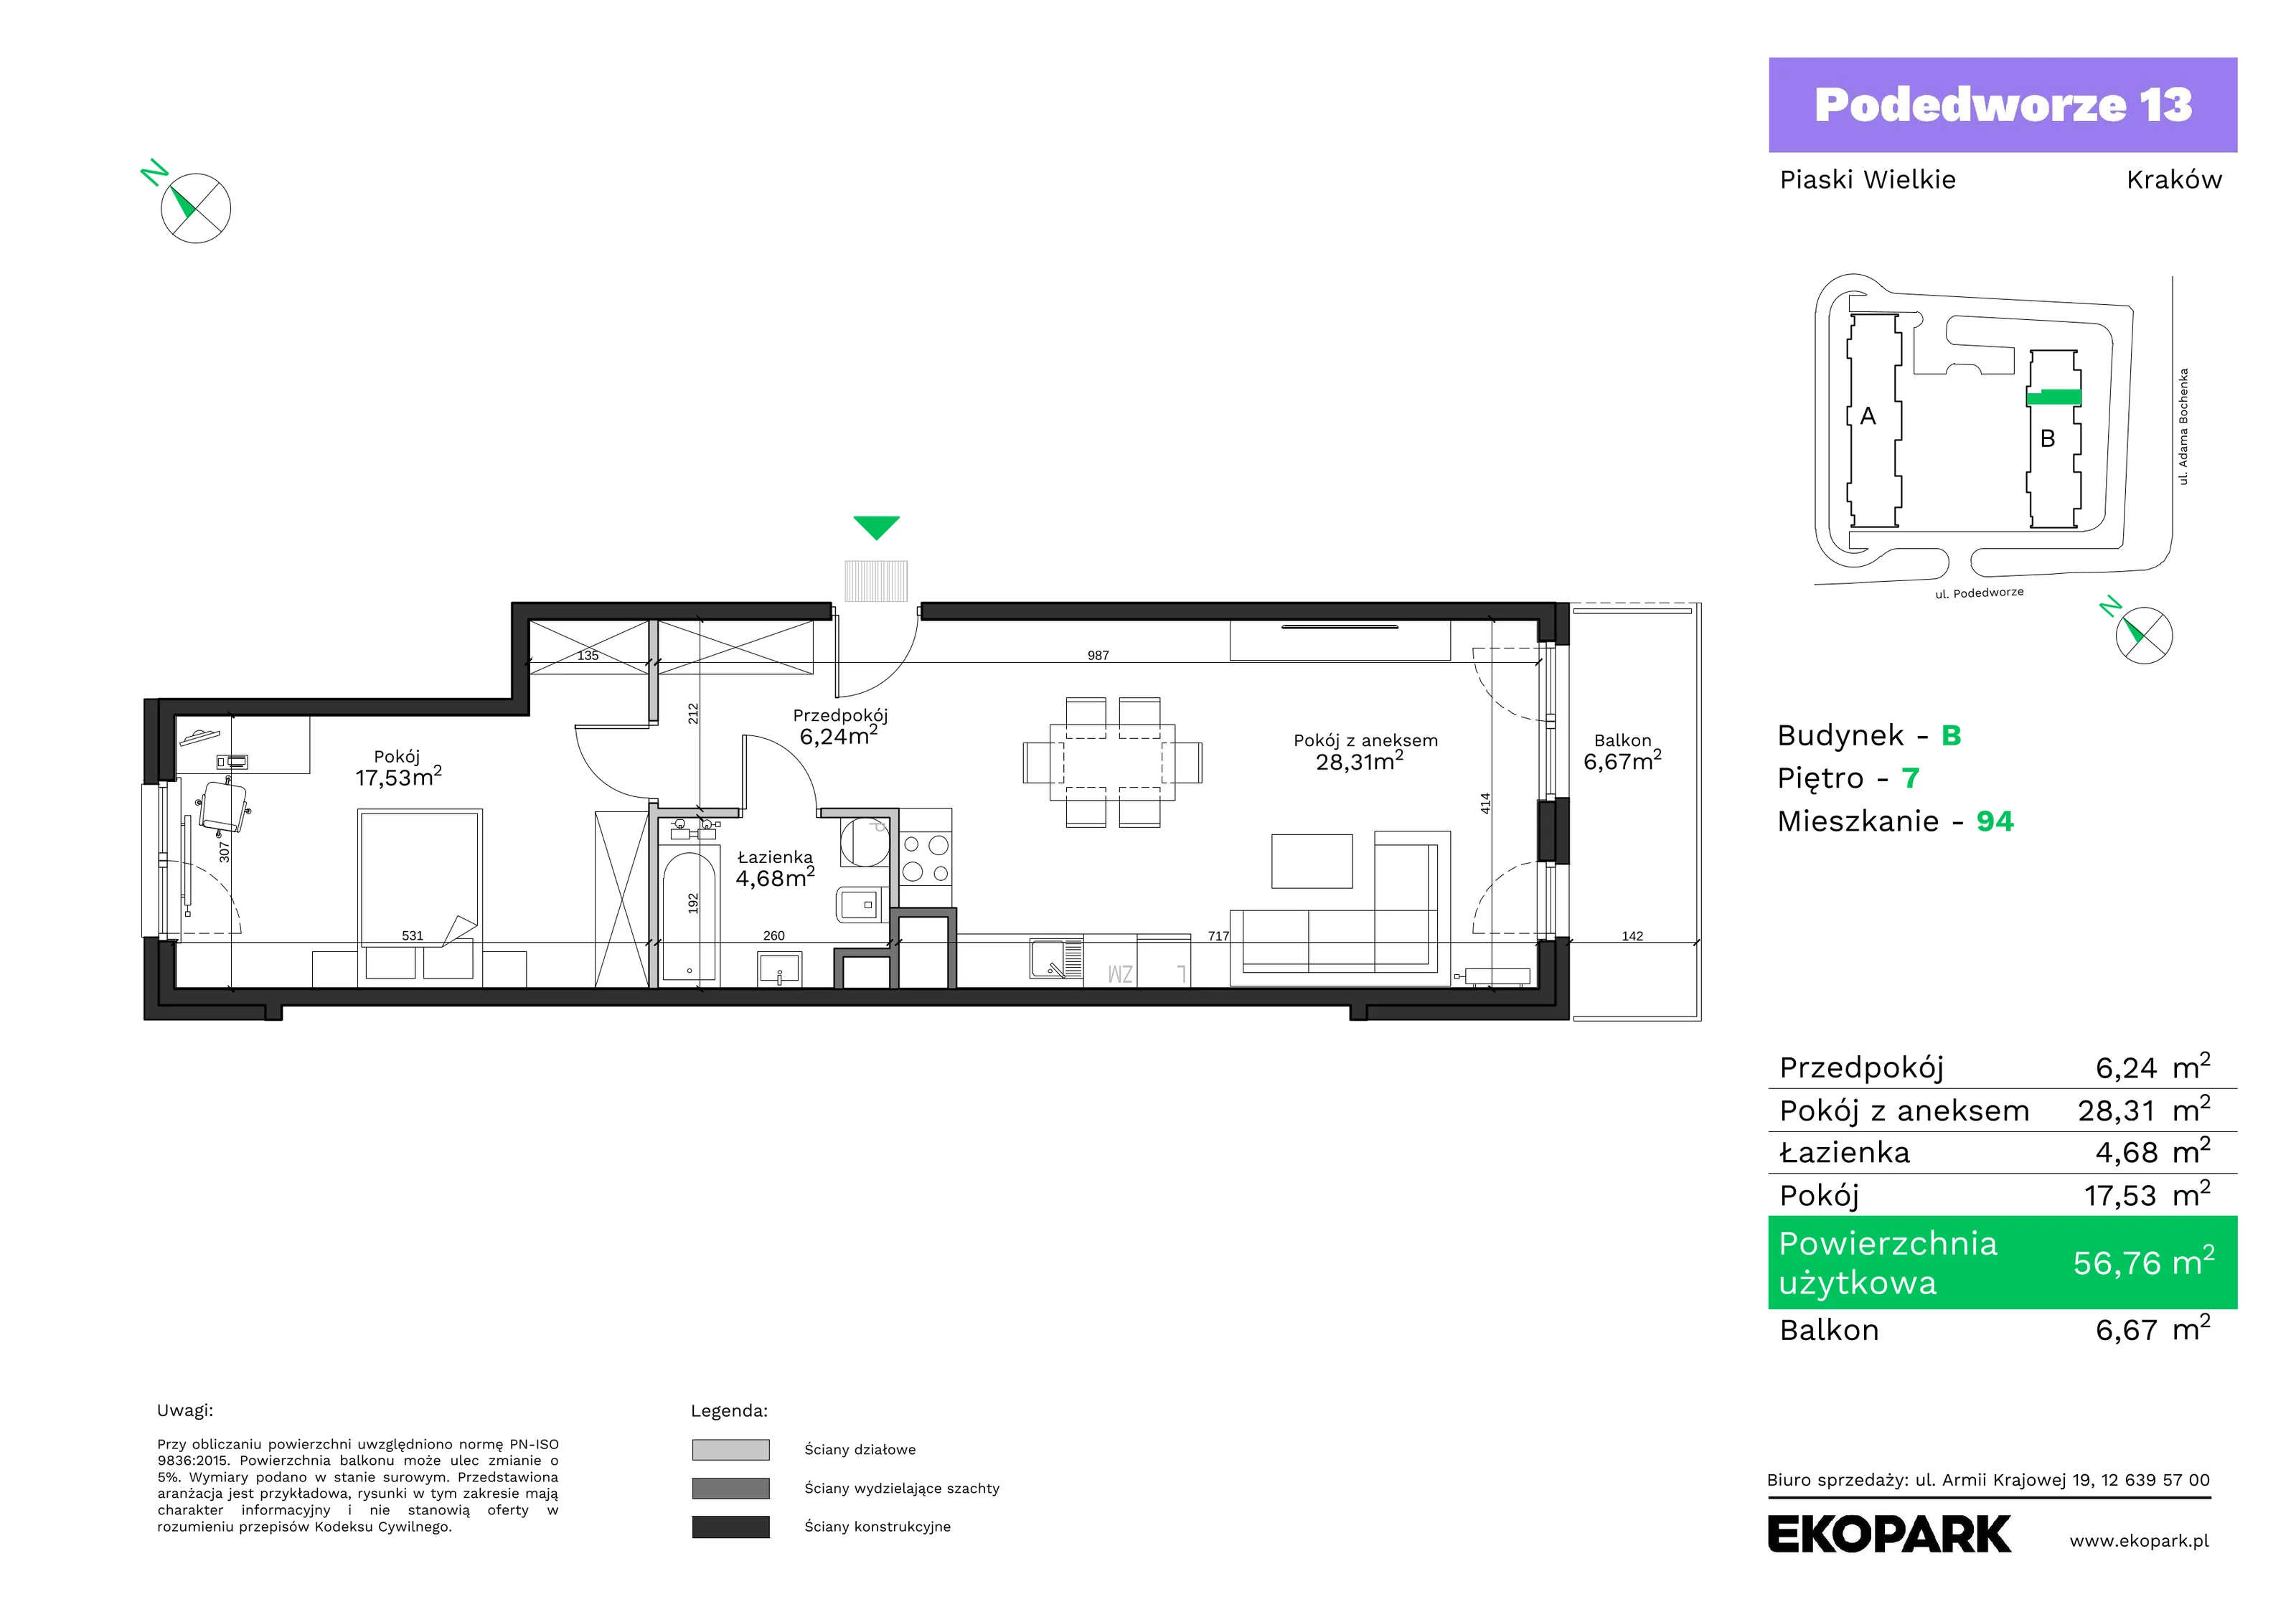 Mieszkanie 56,76 m², piętro 7, oferta nr B94, Podedworze 13, Kraków, Podgórze Duchackie, Piaski Wielkie, ul. Podedworze 13